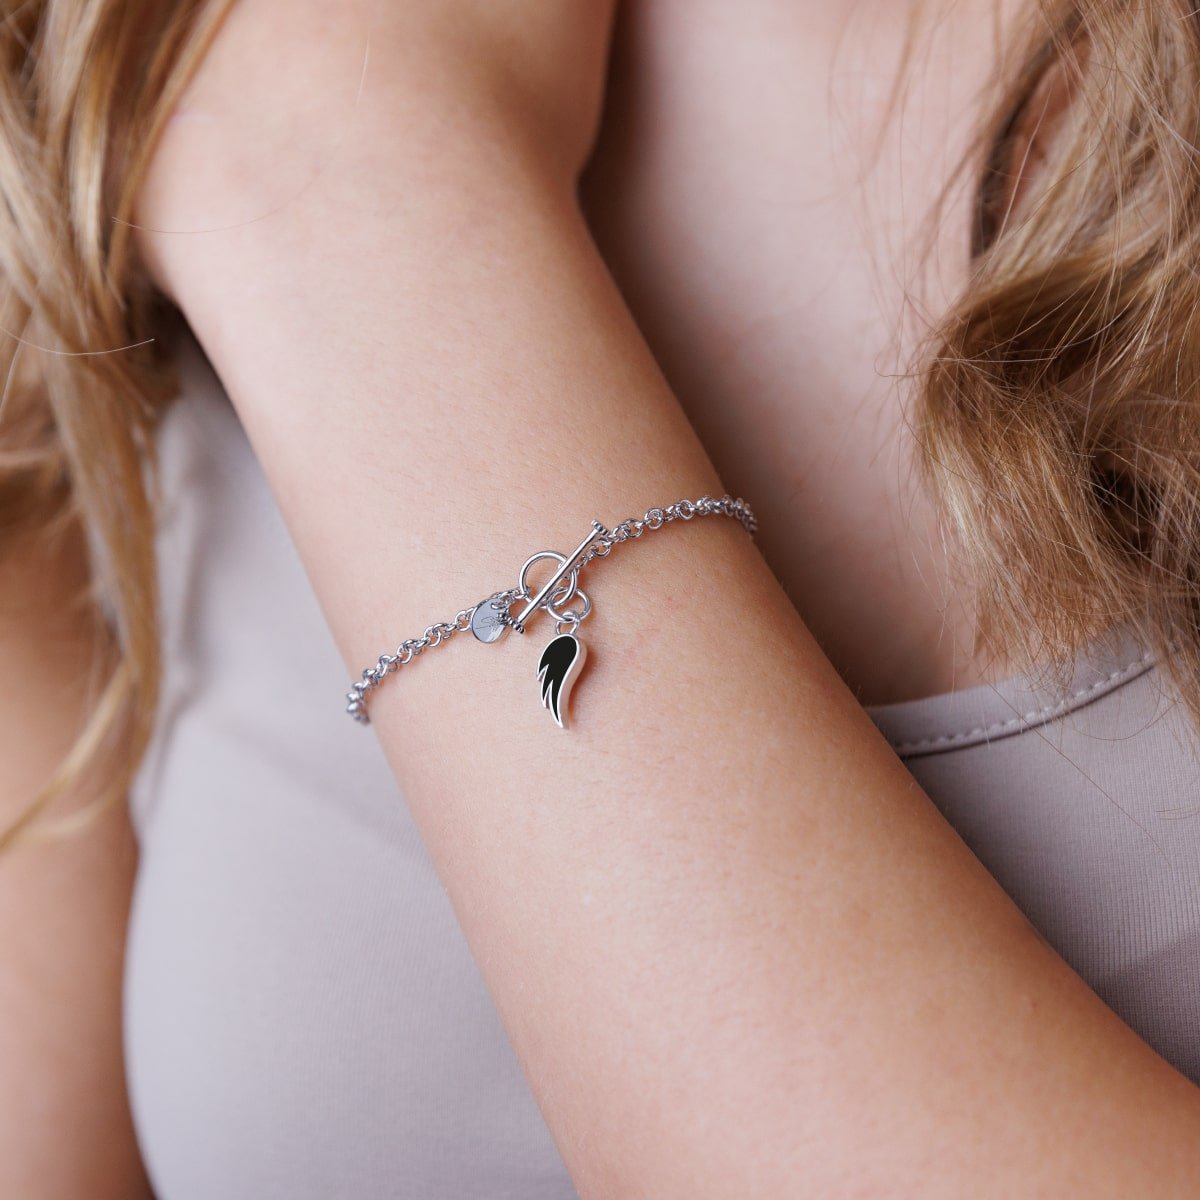 Steff Silver Bracelet with Silver & Black Enamel Guardian Angel Wing Charm. - Steffans Jewellers